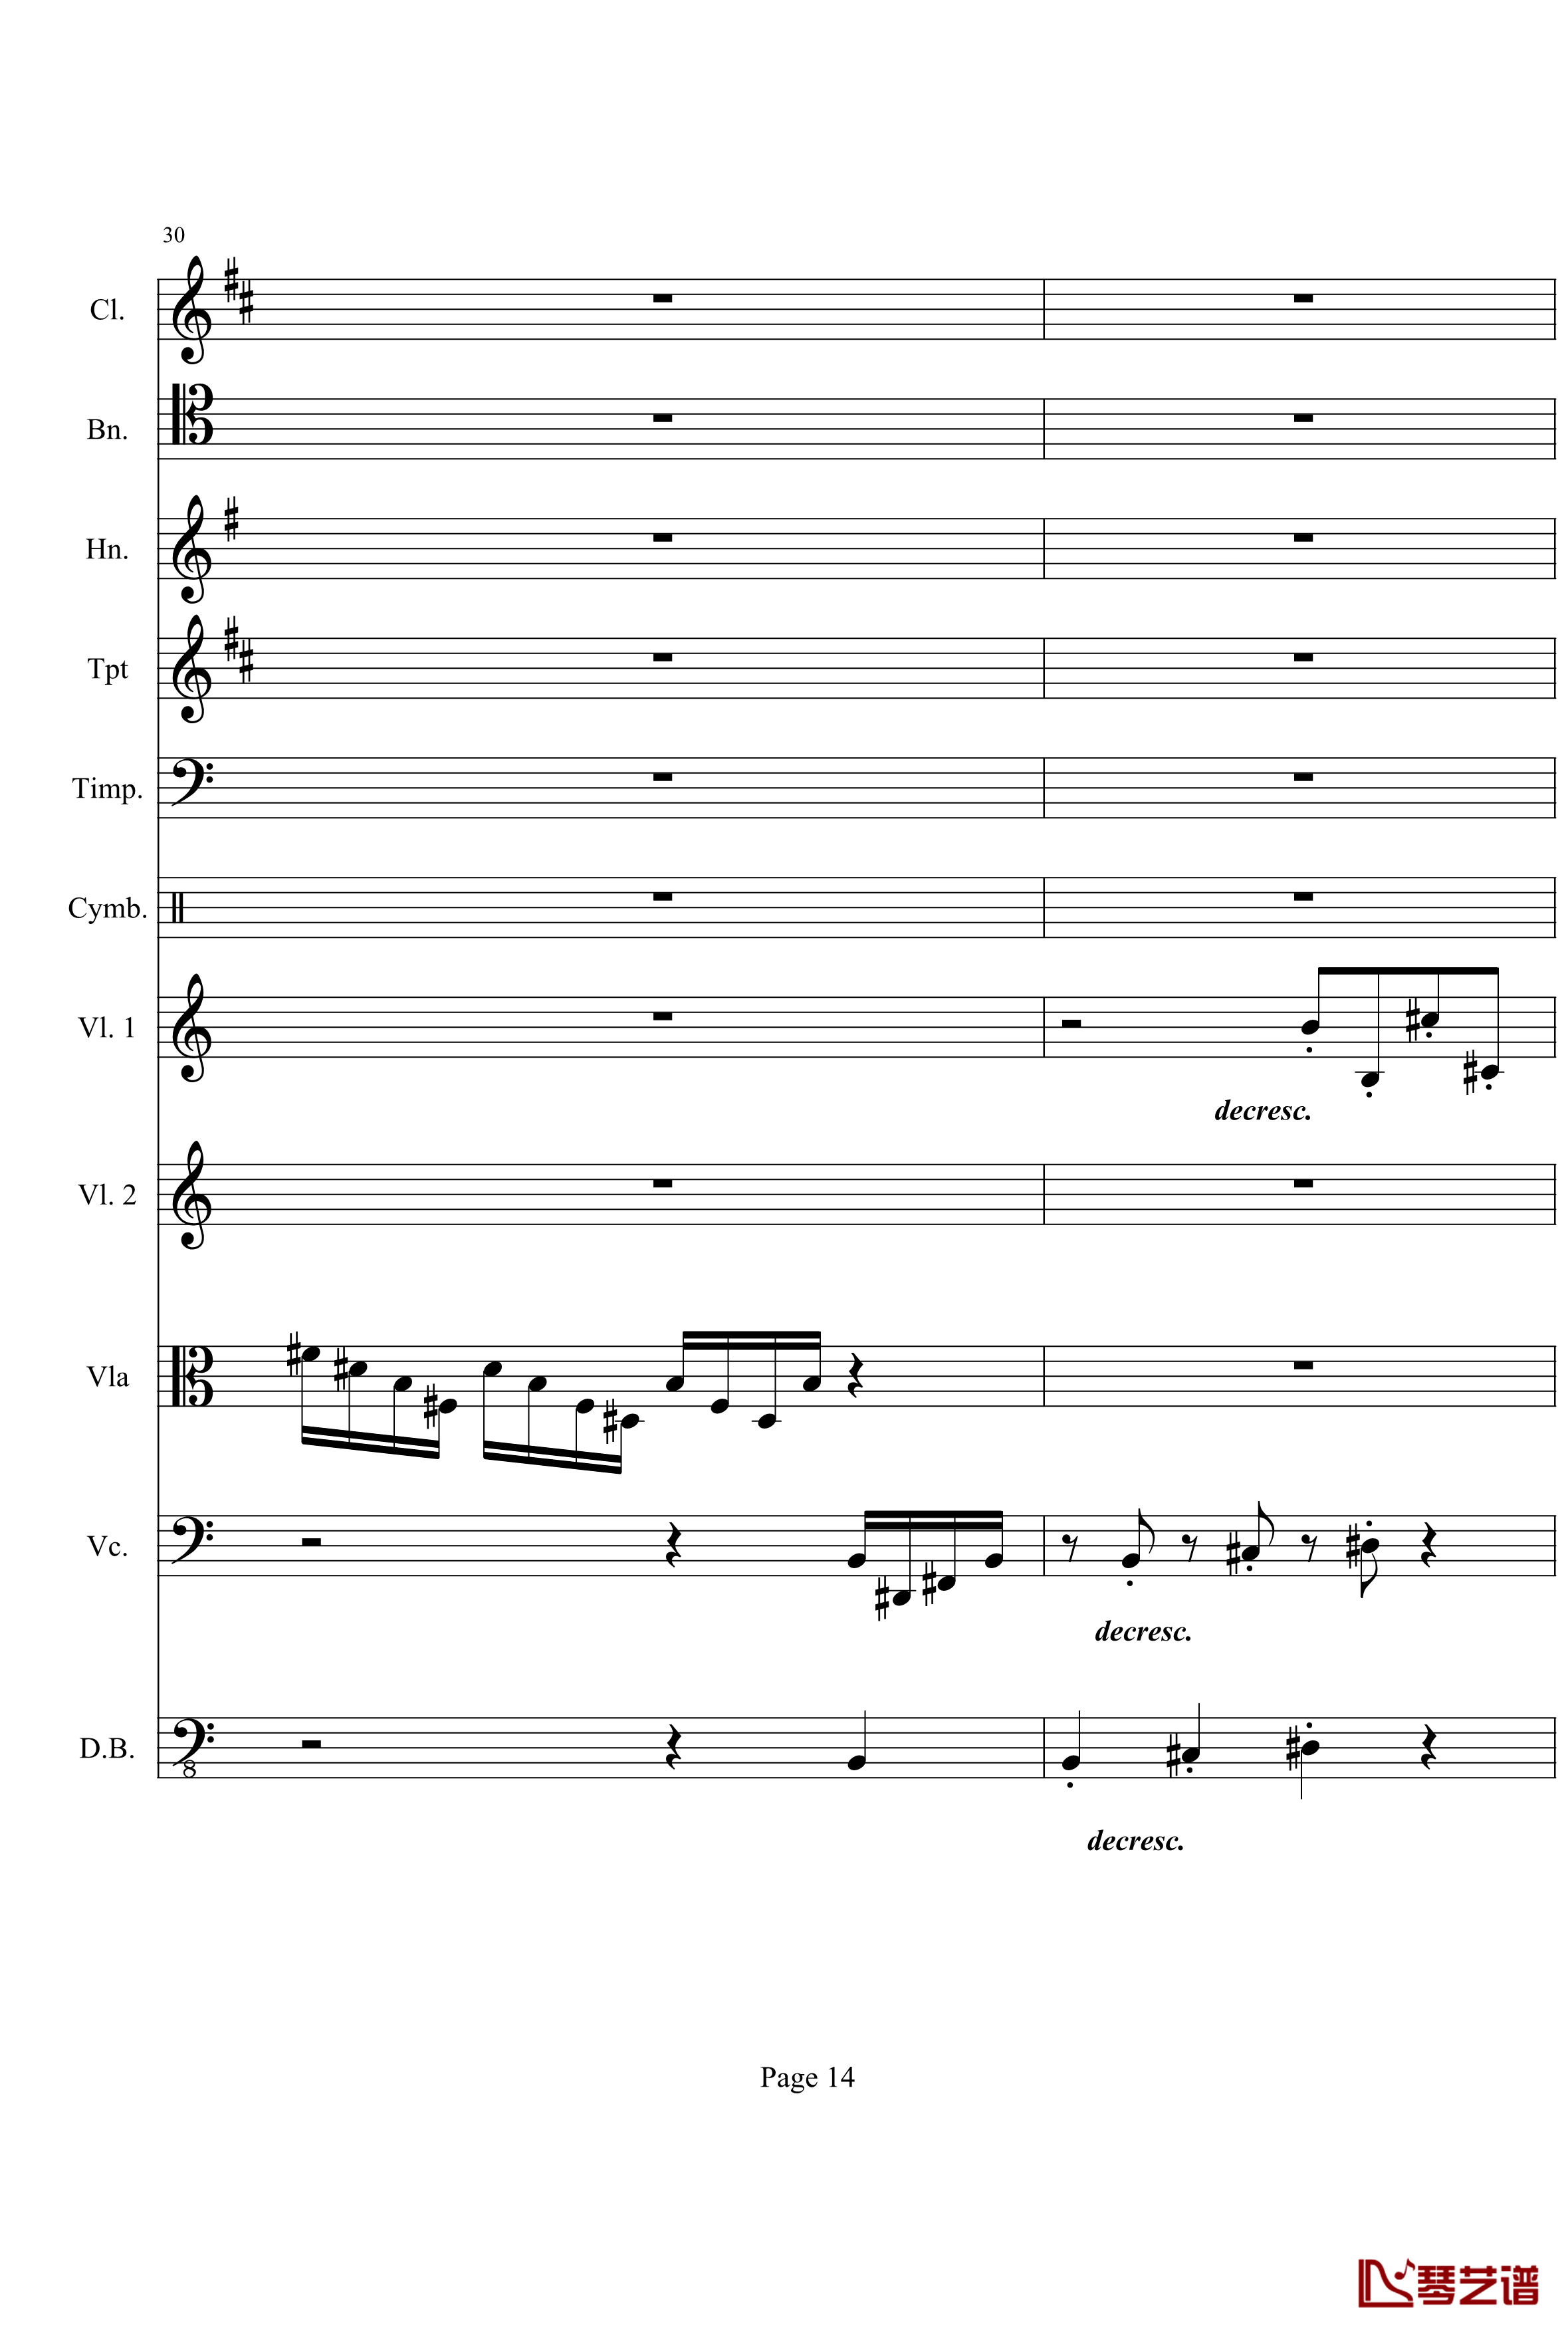 奏鸣曲之交响钢琴谱-第21首-Ⅰ-贝多芬-beethoven14